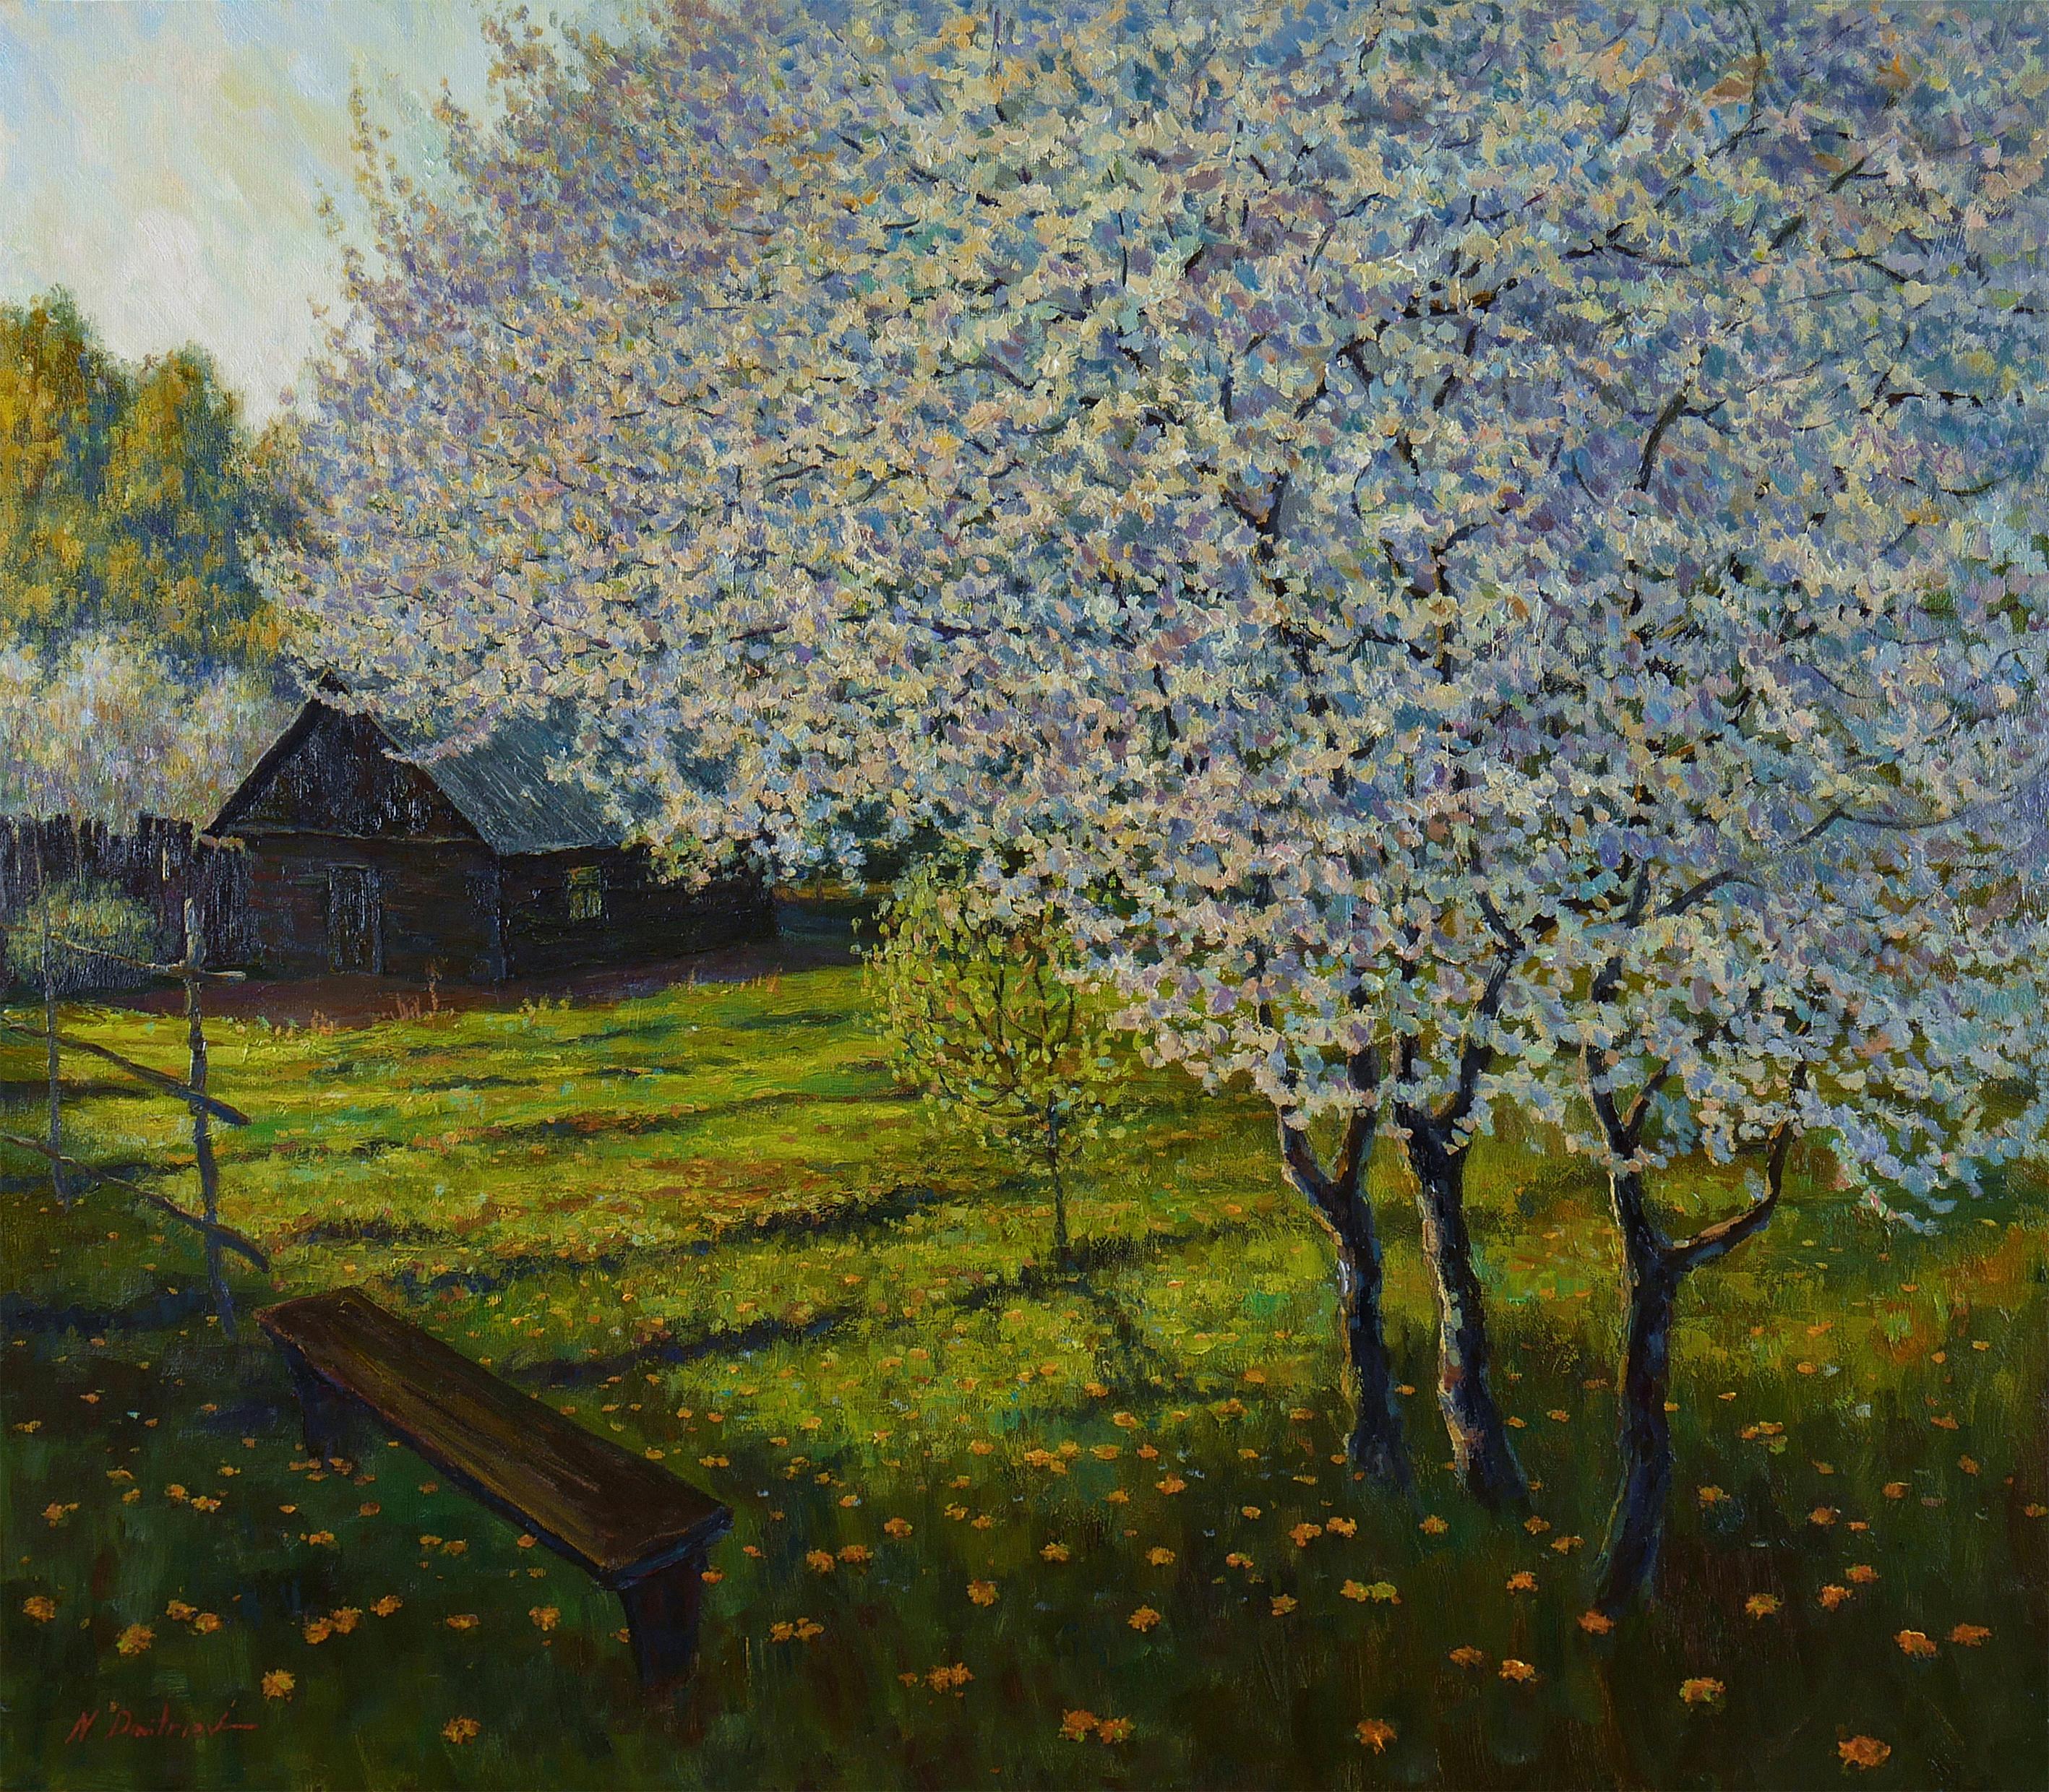 Landscape Painting Nikolay Dmitriev - In The Blooming Garden - peinture de paysage ensoleillé au printemps